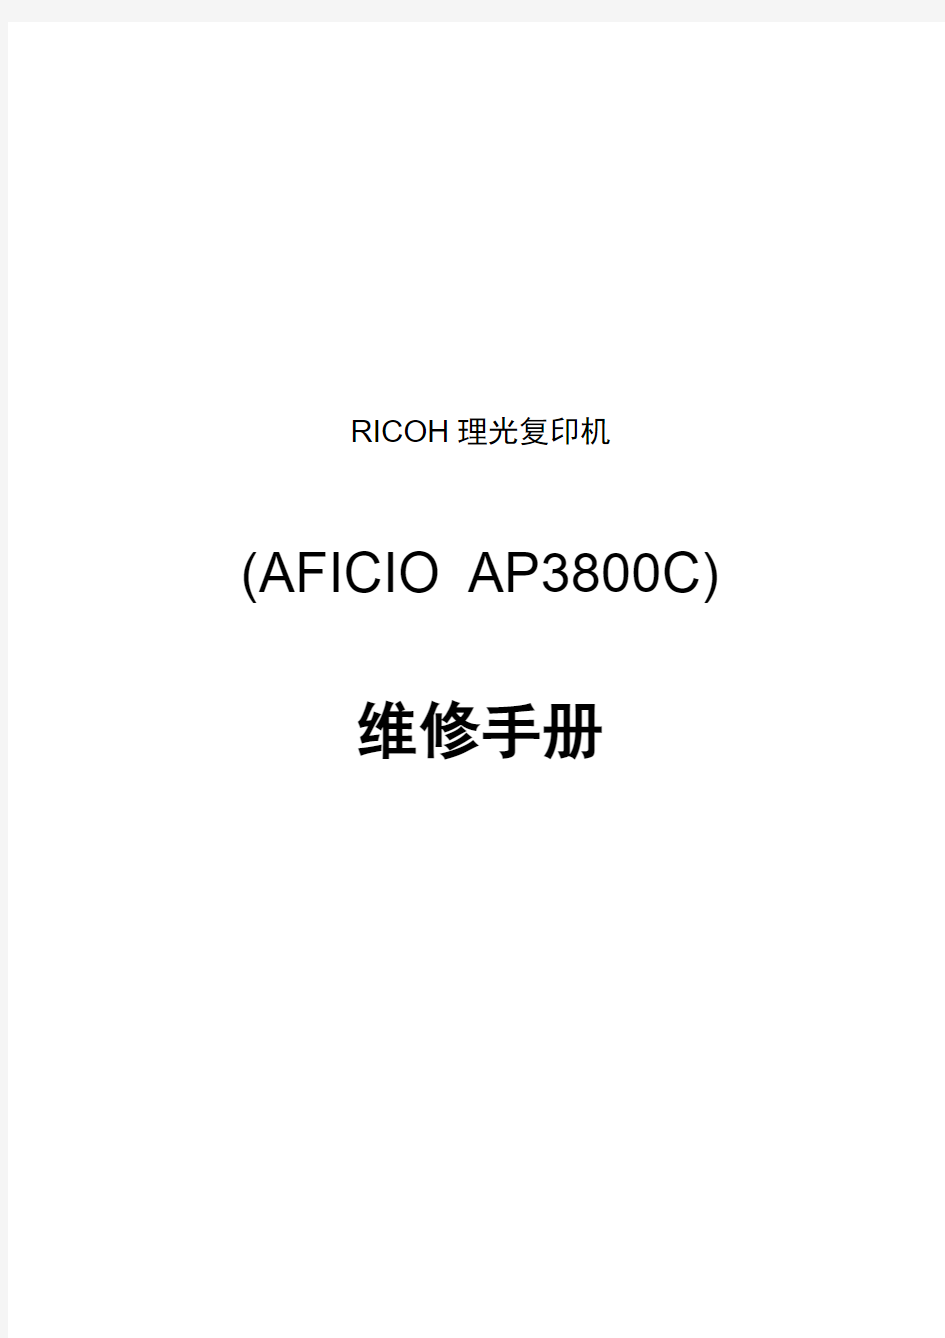 AFICIO AP3800C维修手册